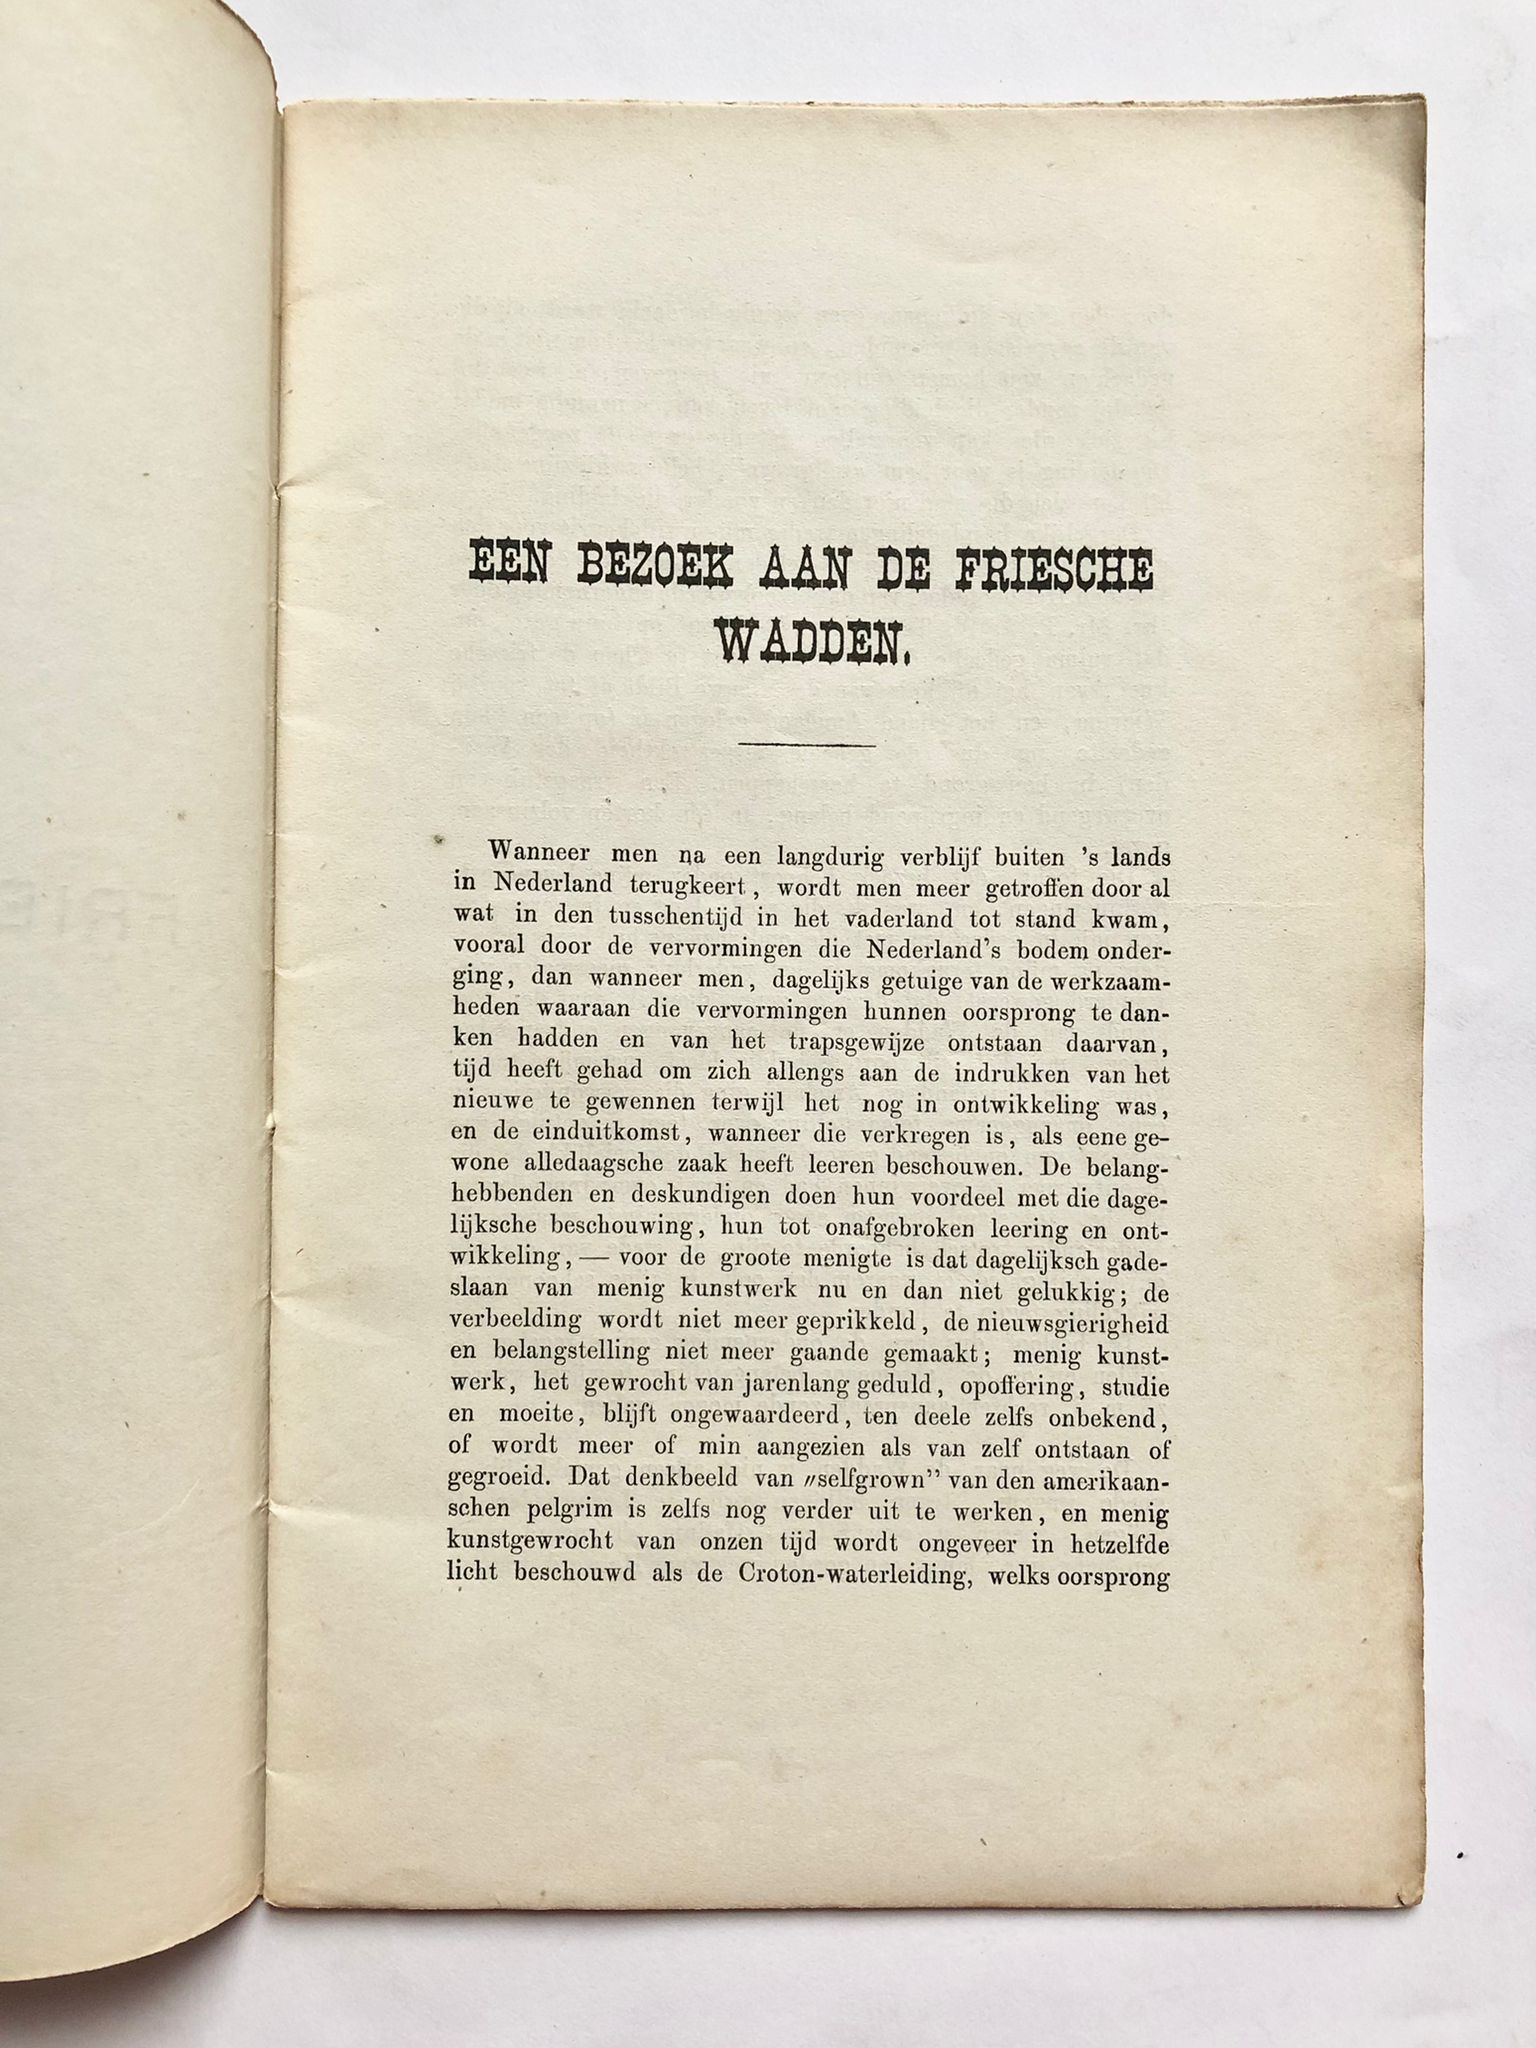 [Waddeneilanden 1878] Een bezoek aan de Friesche Wadden, Overgedrukt uit ,,Eigen Haard”, H. D. Tjeenk Willink, 1878, 30 pp.